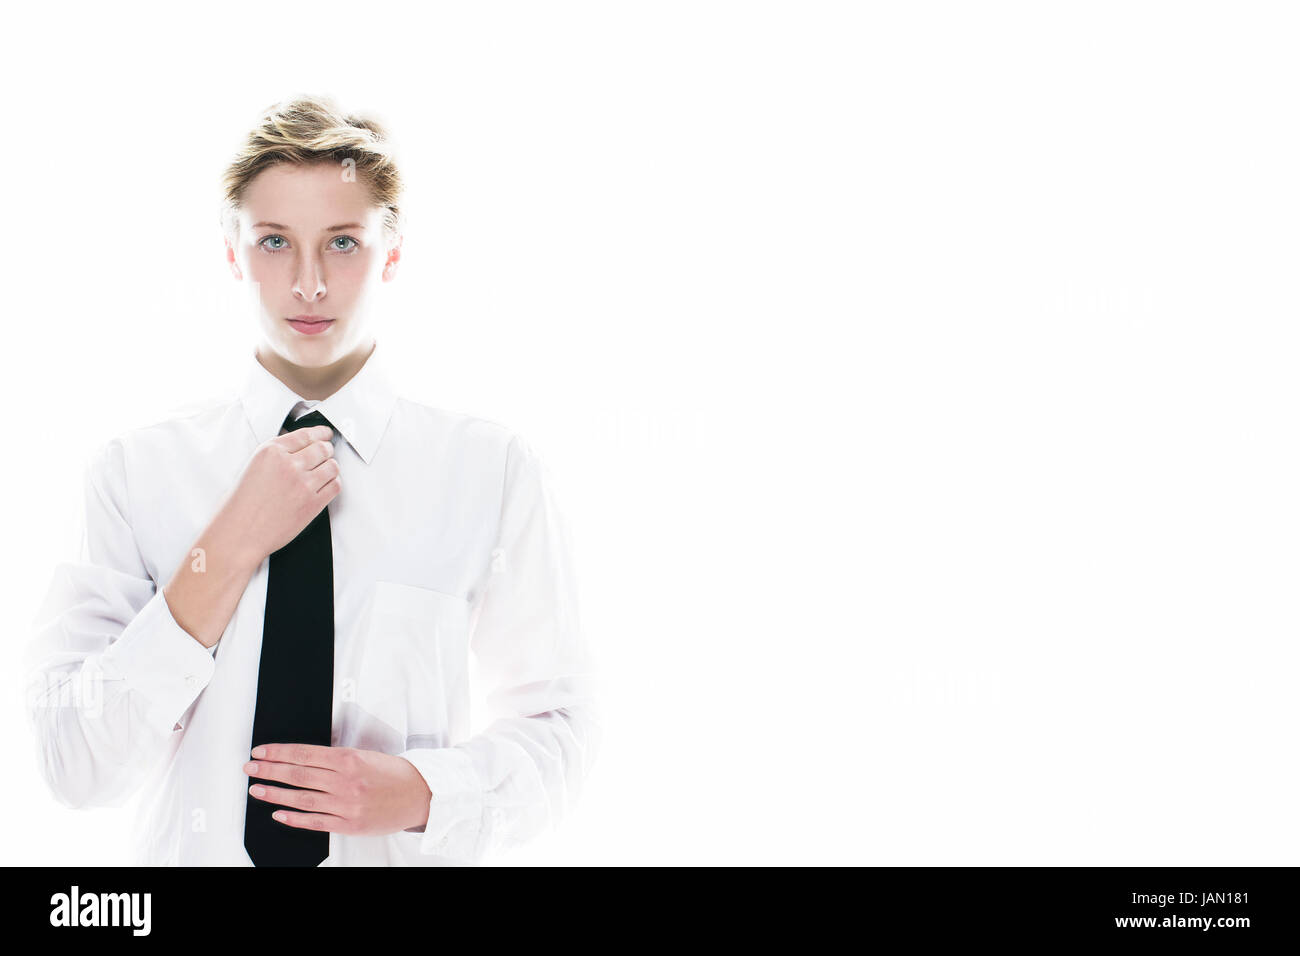 junge androgyne frau richtet ihre krawatte auf weißem hintergrund Stock Photo